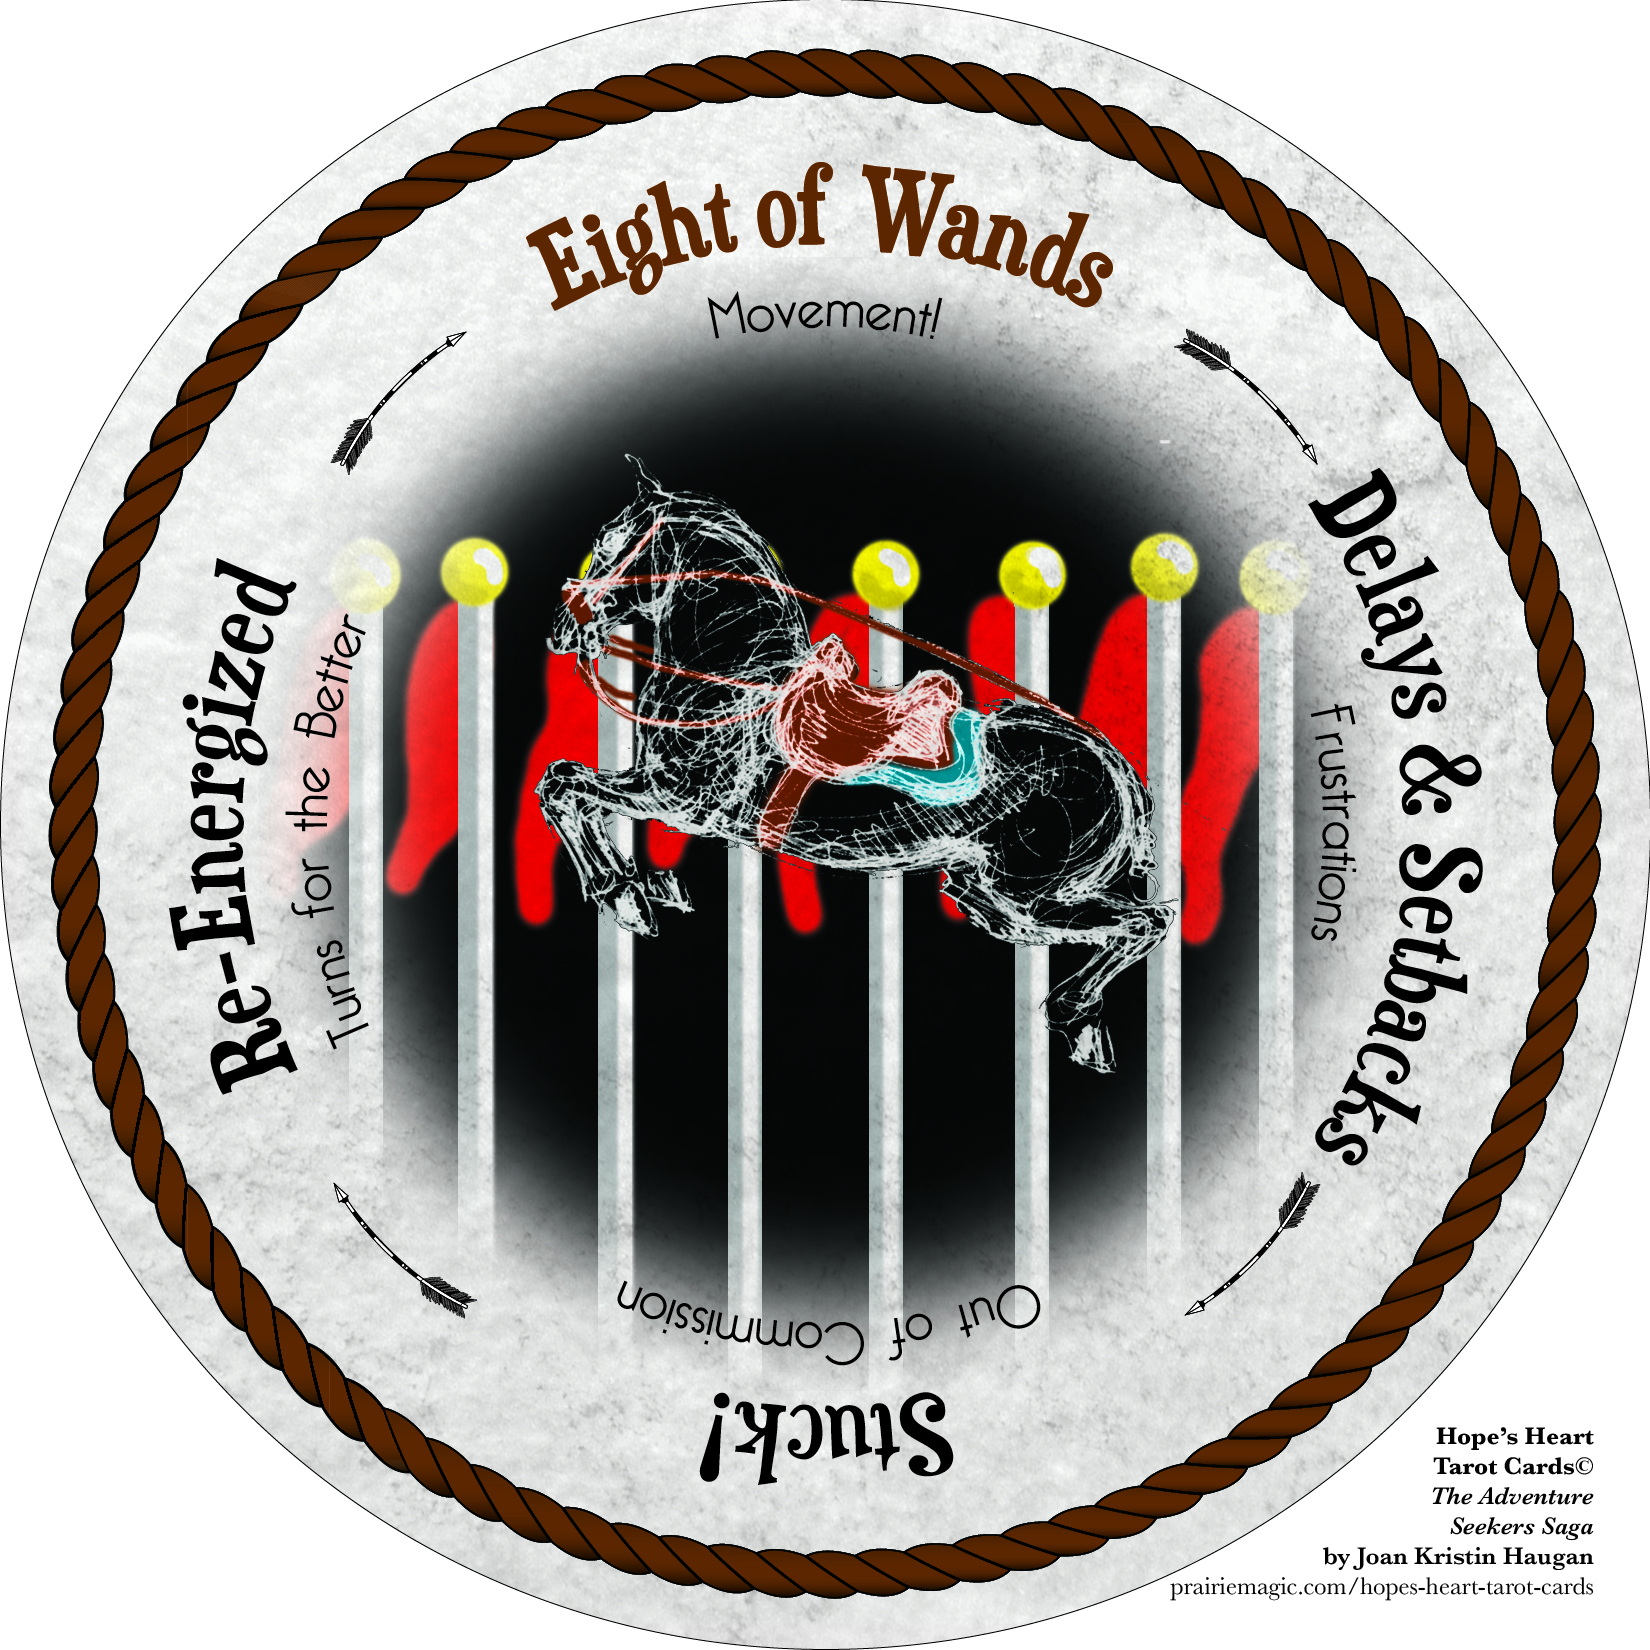 8-of-wands-hope-s-heart-tarot-cards-.jpg